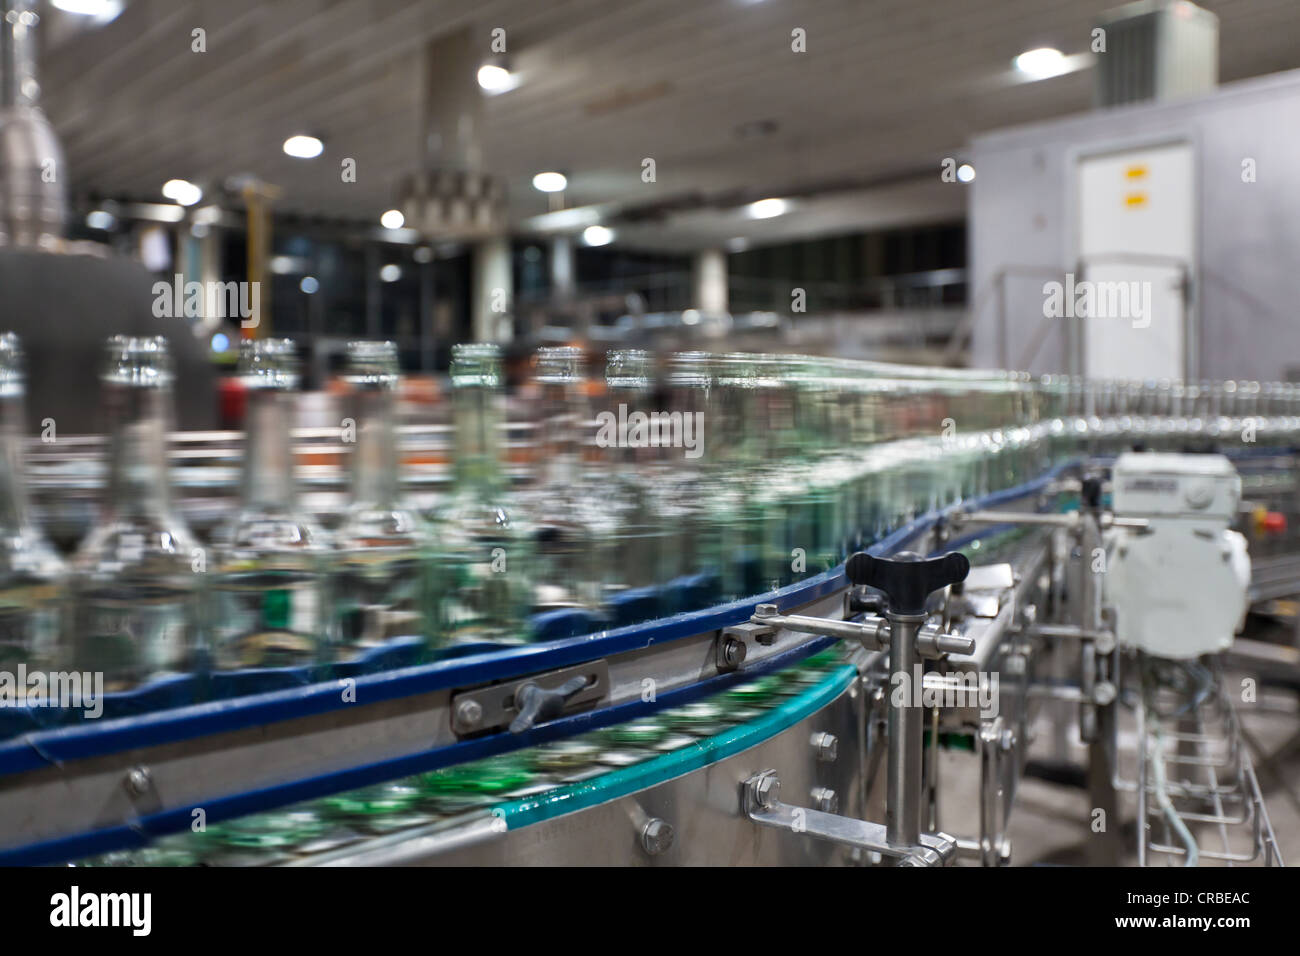 Leere Bierflaschen nach der Reinigung auf ein Förderband, Binding Brauerei,  Frankfurt am Main, Hessen, Deutschland, Europa Stockfotografie - Alamy